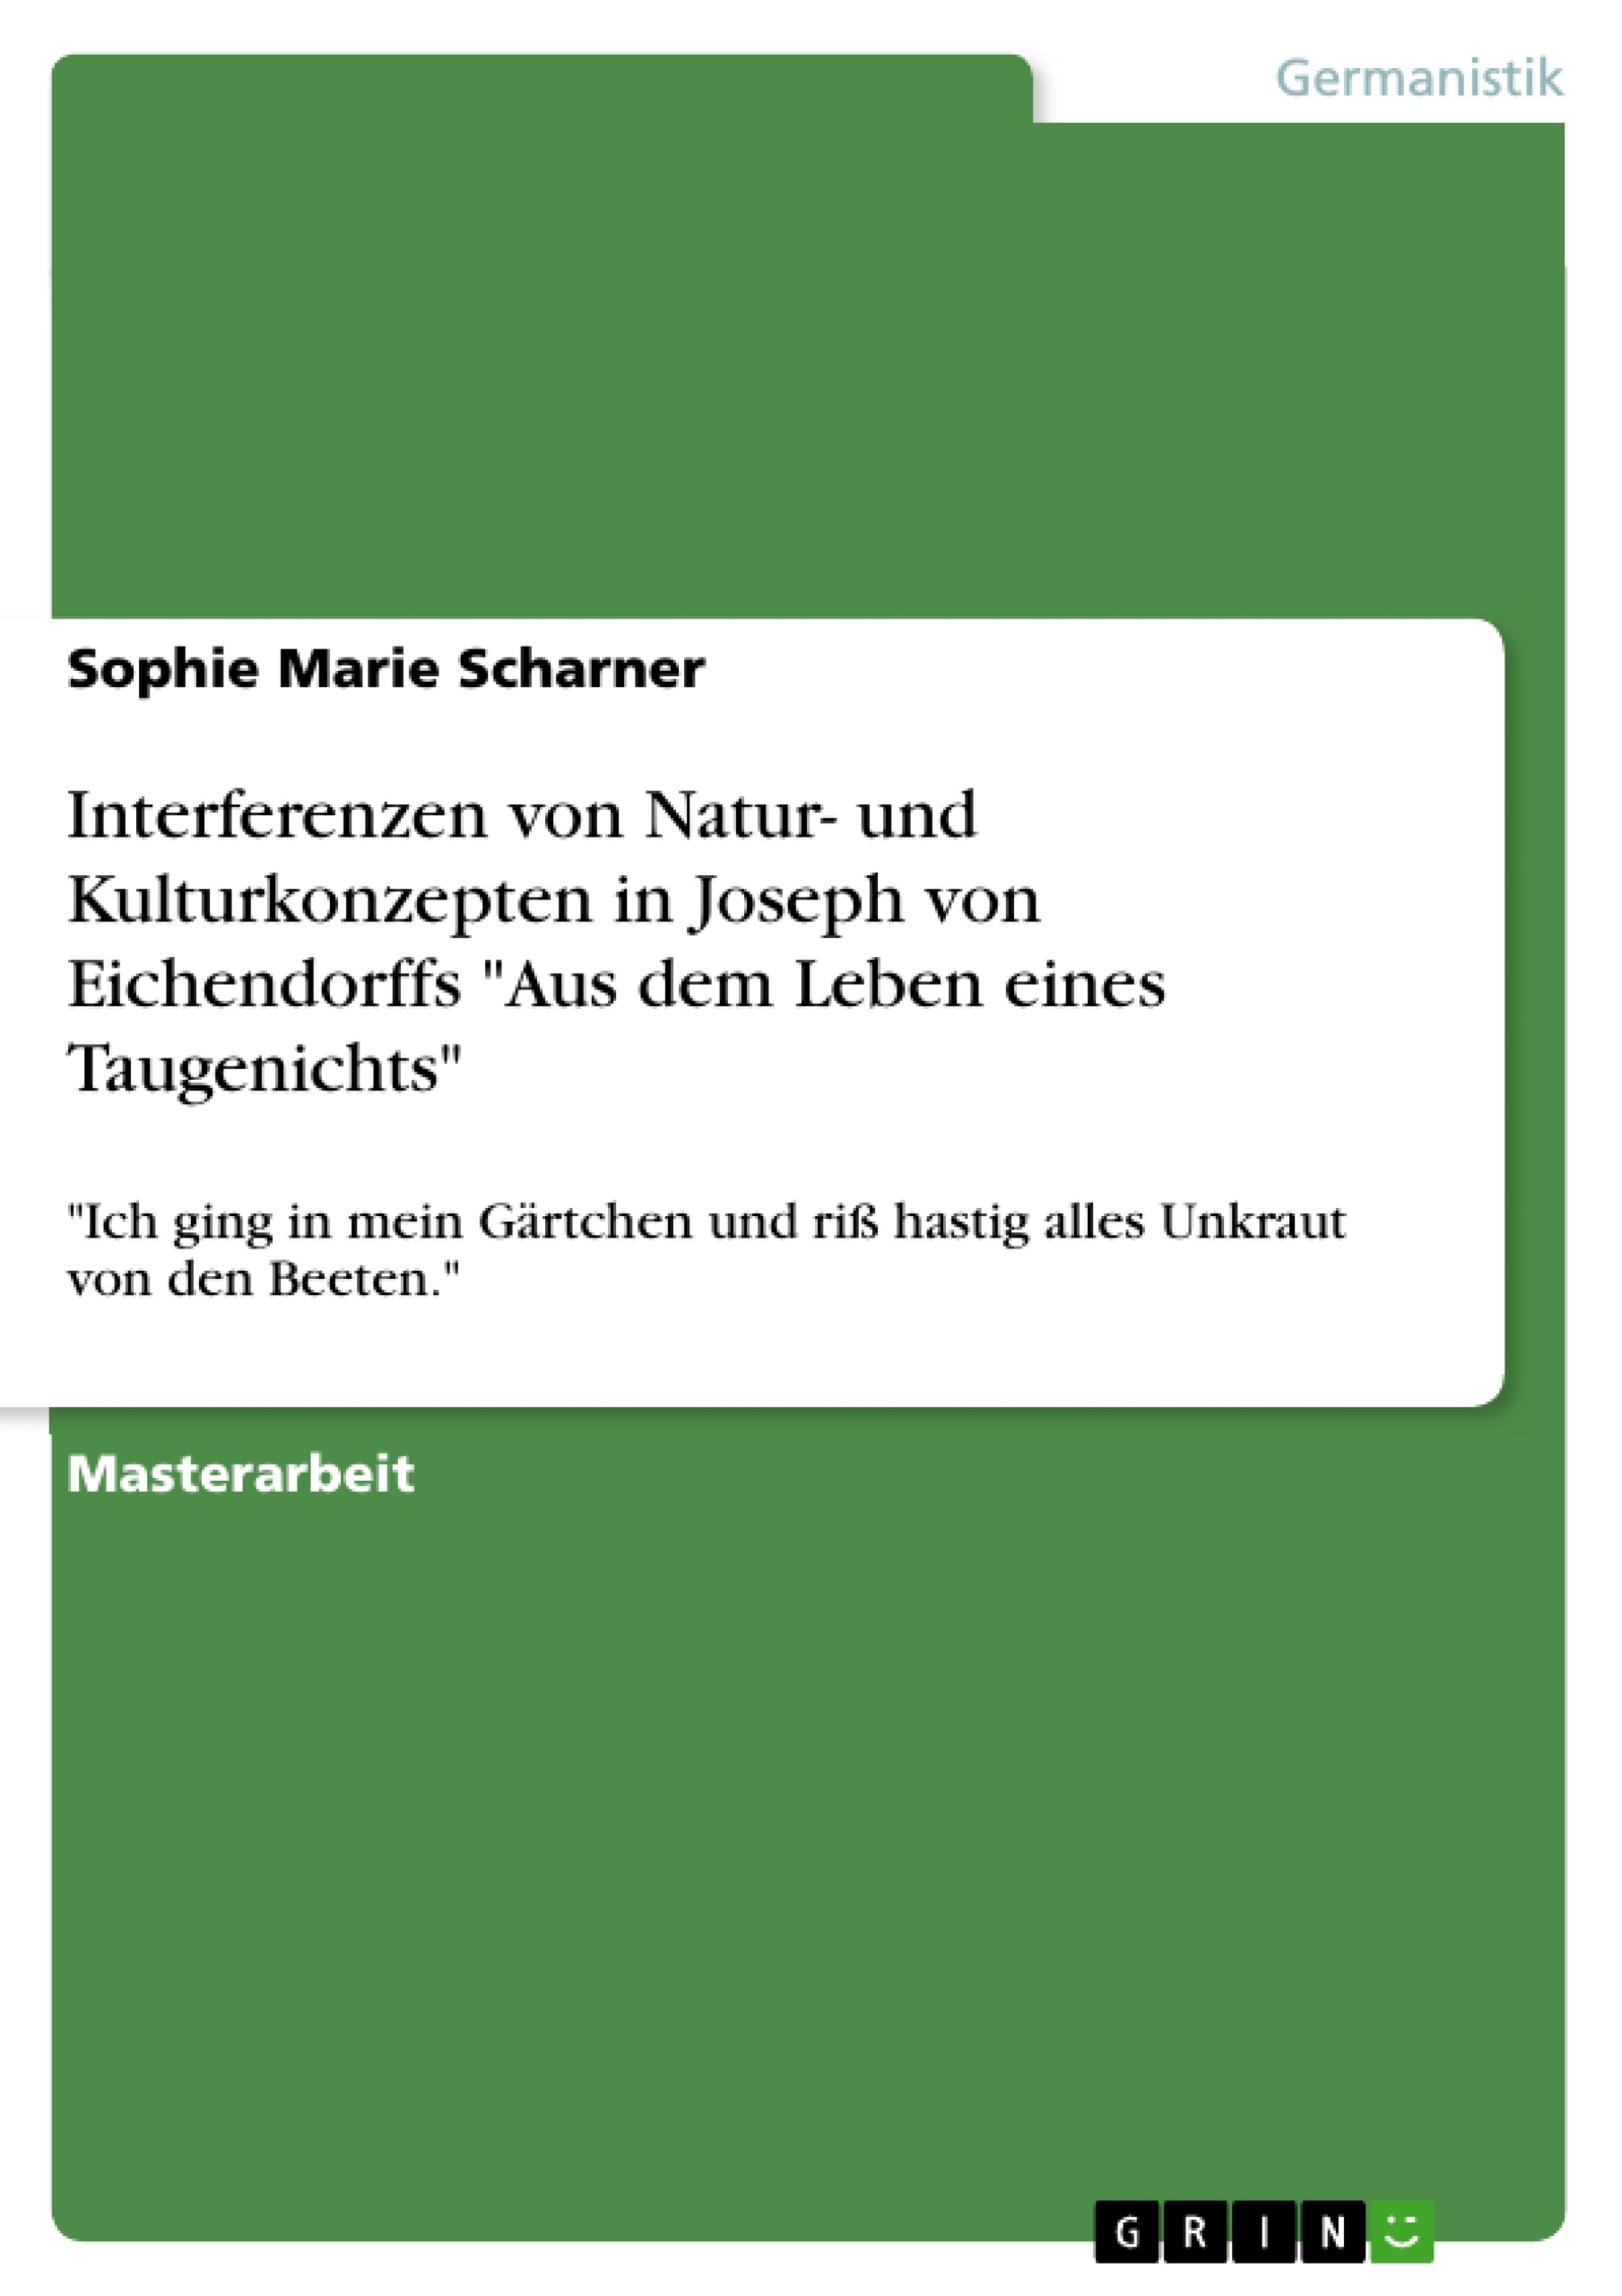 Titre: Interferenzen von Natur- und Kulturkonzepten in Joseph von Eichendorffs "Aus dem Leben eines Taugenichts"